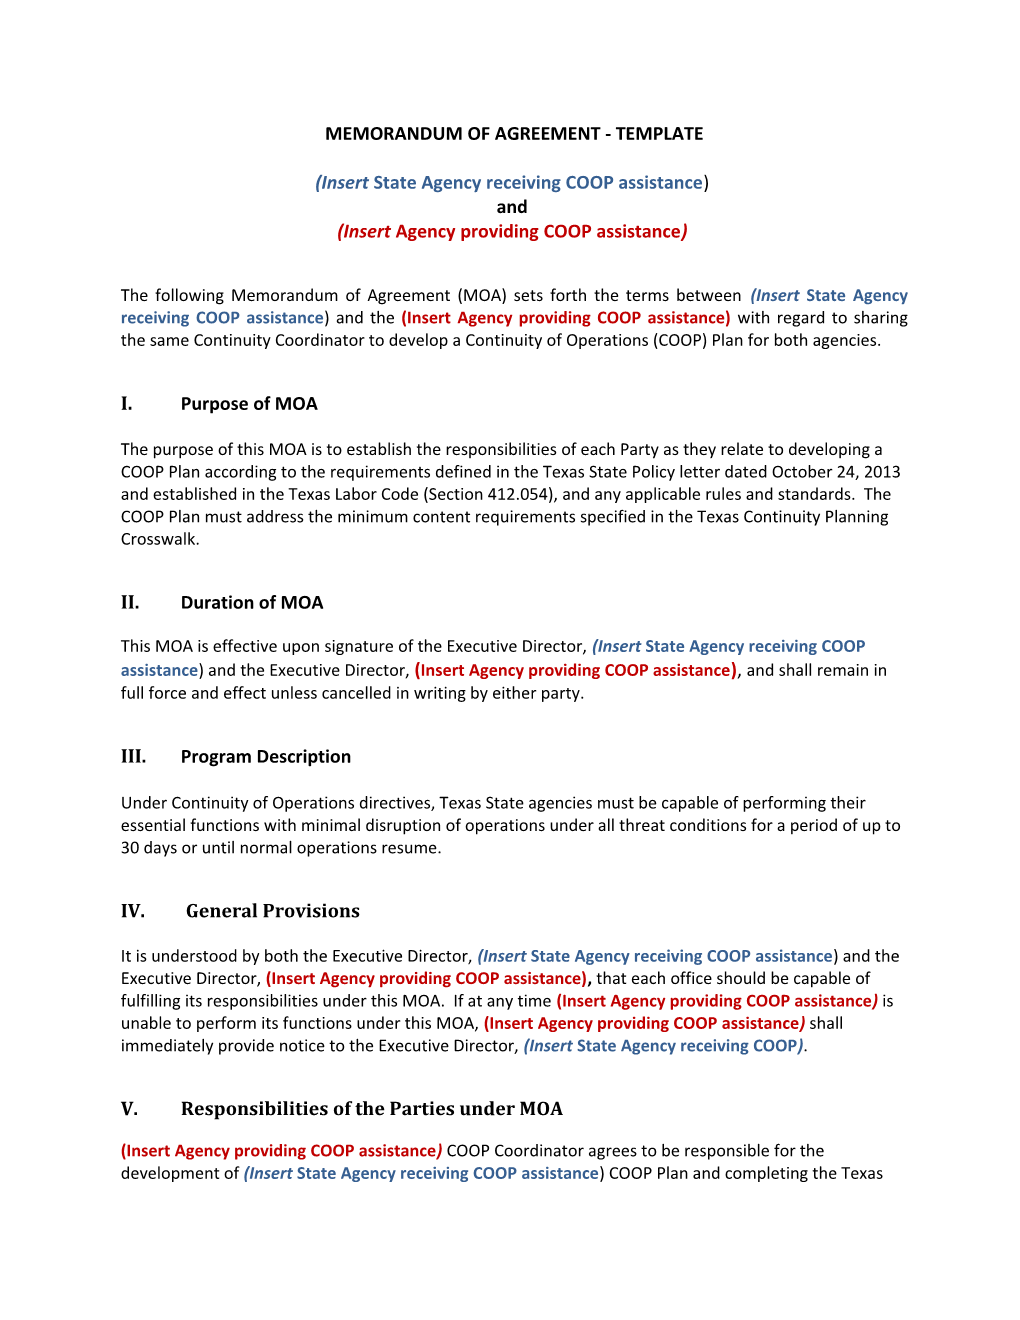 Memorandum of Agreement - Template